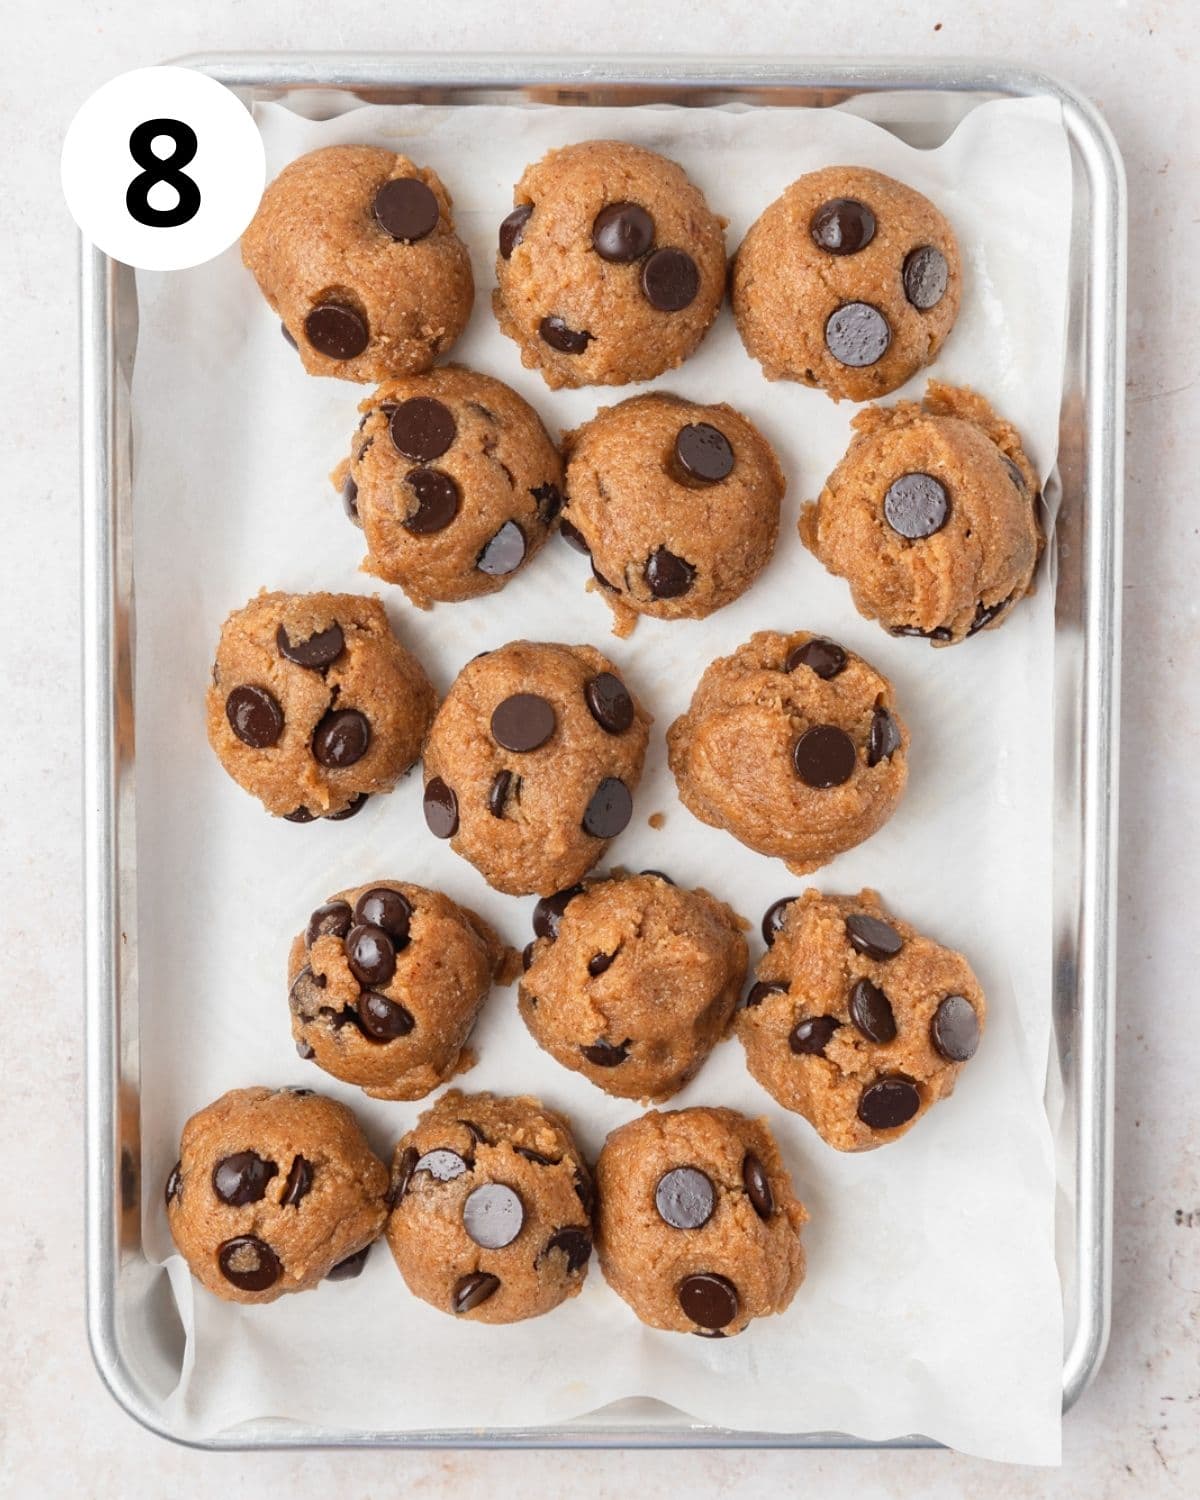 chocolate almond butter cookie dough balls on baking sheet.